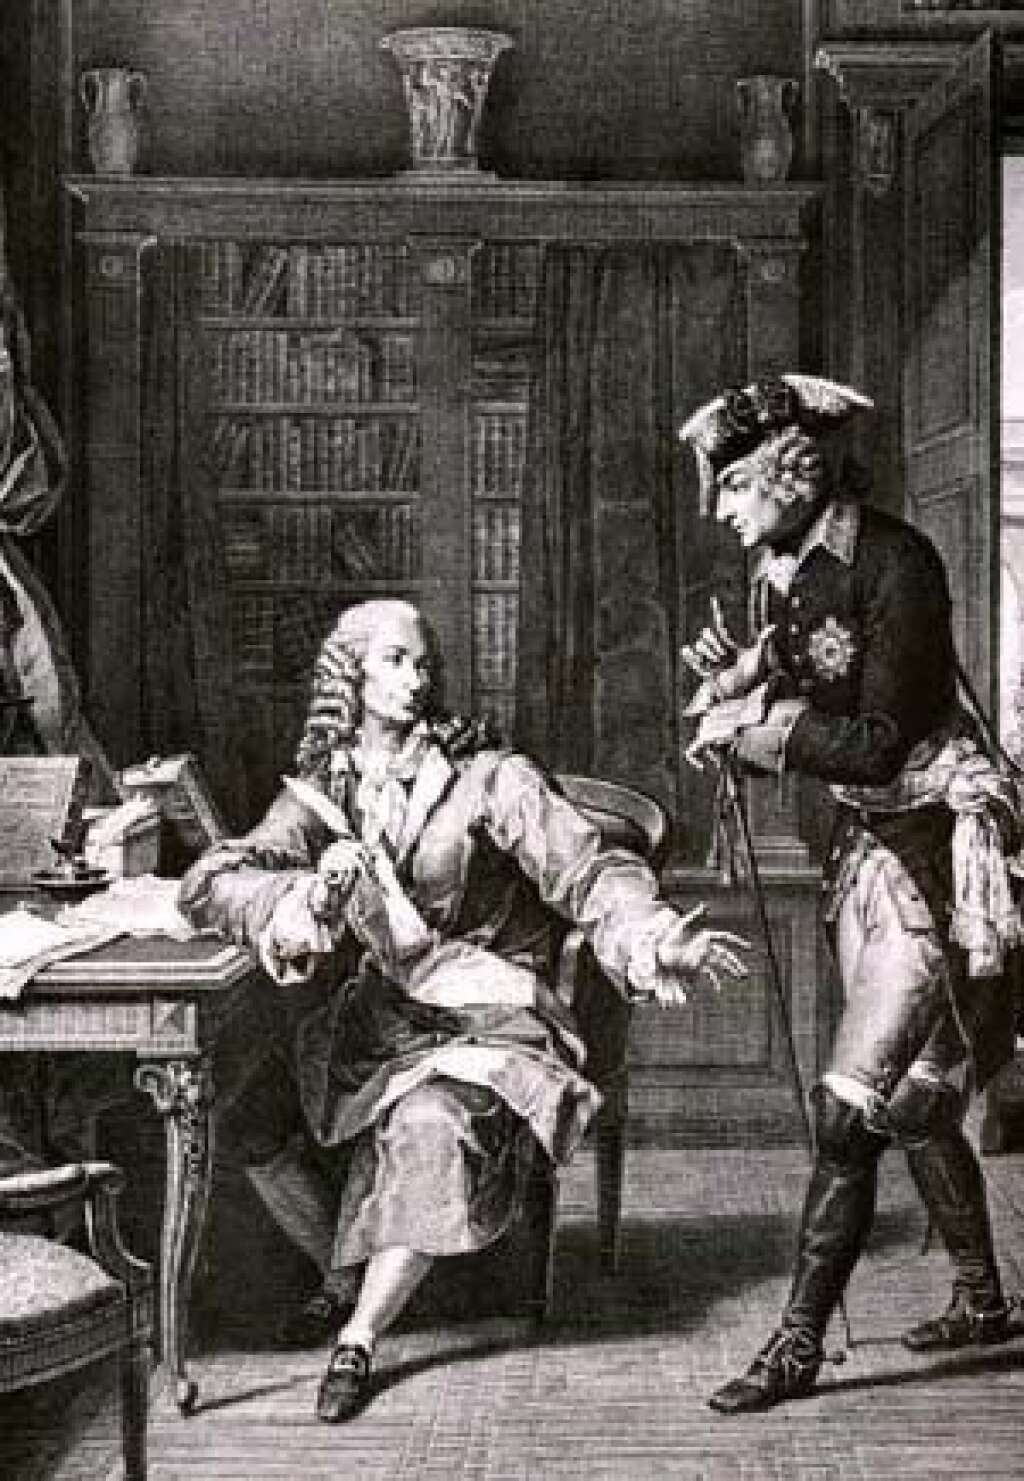 Frédéric II de Prusse (1712-1786) - L'homosexualité de "Frédéric le Grand" est le plus souvent absente des manuels scolaires, mais elle est aujourd'hui communément admise par les Historiens. Il eut par ailleurs une relation avec Voltaire, celle-là plus platonique, qui s'est fini tristement. Il fit enfermer Voltaire de peur que celui-ci ne divulgue ses poèmes, parfois très audacieux, et clairement homosexuels. Après la rupture, Voltaire lui renverra <a href="http://gayscelebres.hautetfort.com/archive/2010/08/17/frederic-ii-le-grand-amoureux.html">selon l'historien Michel Larivière </a>ses décorations et ses ordres accompagnés d'un dernier quatrain ambigu : "Je les reçus avec tendresse / Je vous les rends avec douleur / C'est ainsi qu'un amant, dans son extrême ardeur / Rend le portrait de sa maîtresse".